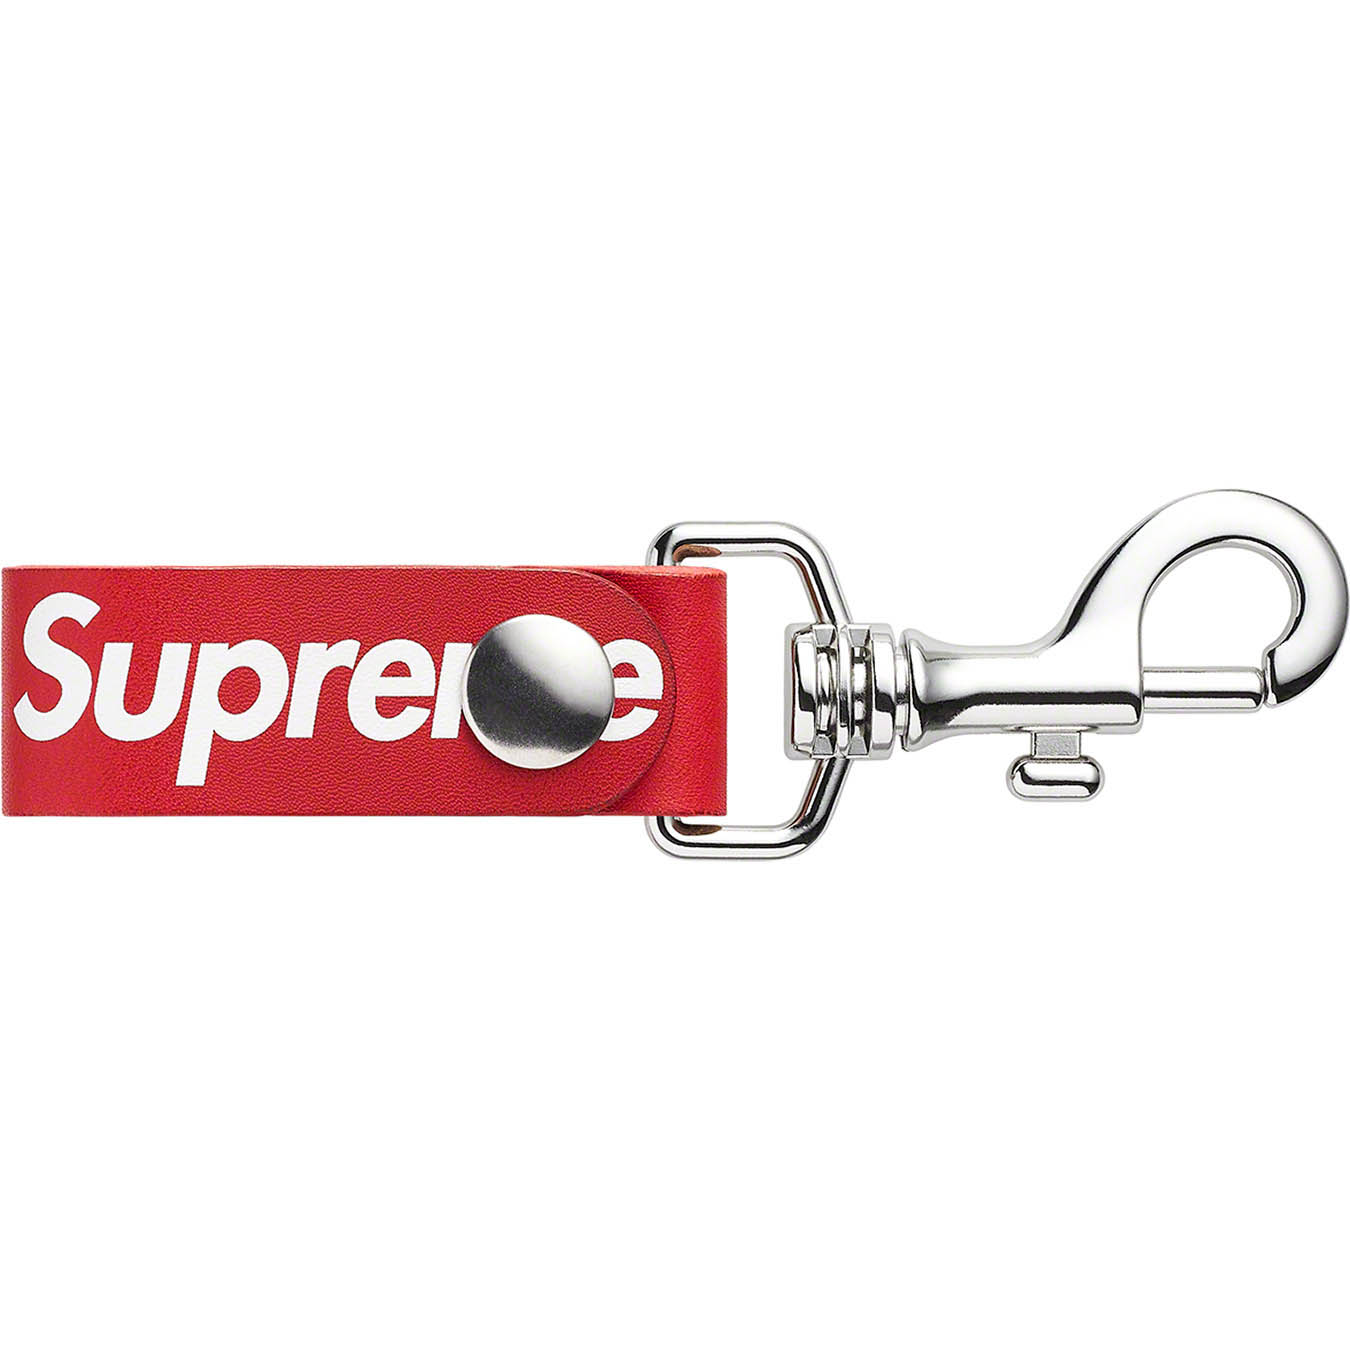 Supreme Leather Key Loop